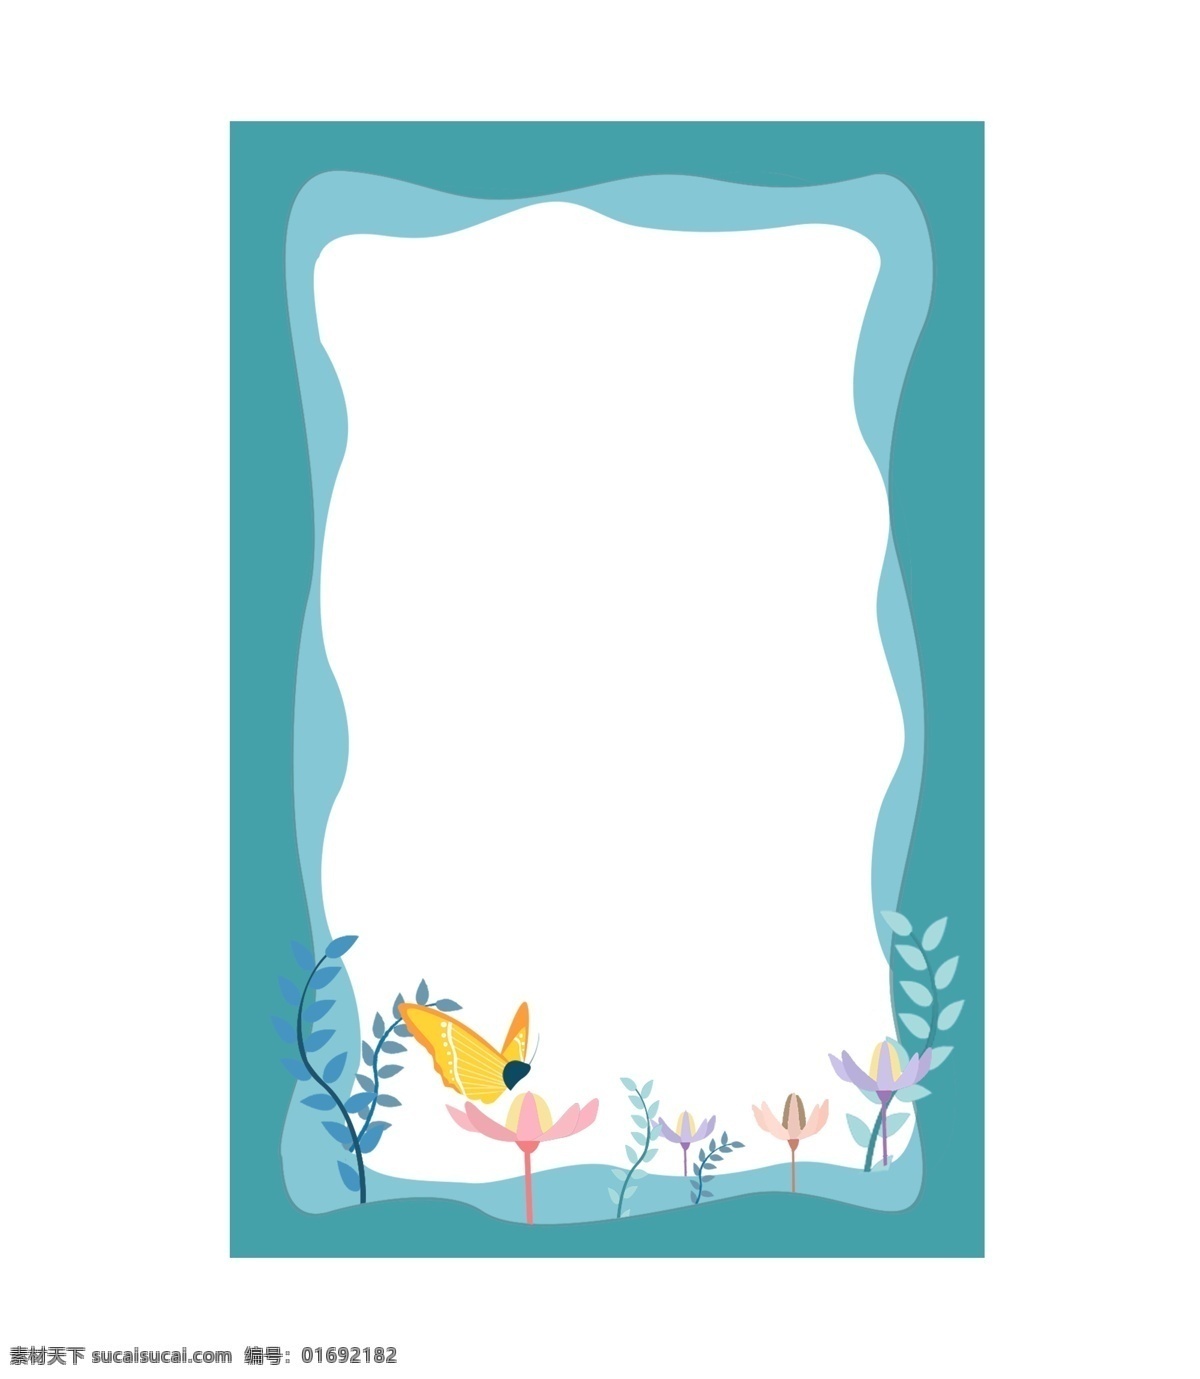 蝴蝶 花朵 蓝色 边框 蝴蝶装饰 植物 卡通边框 边框装饰 蓝色边框 花边框 漂亮的边框 叶子 枝条